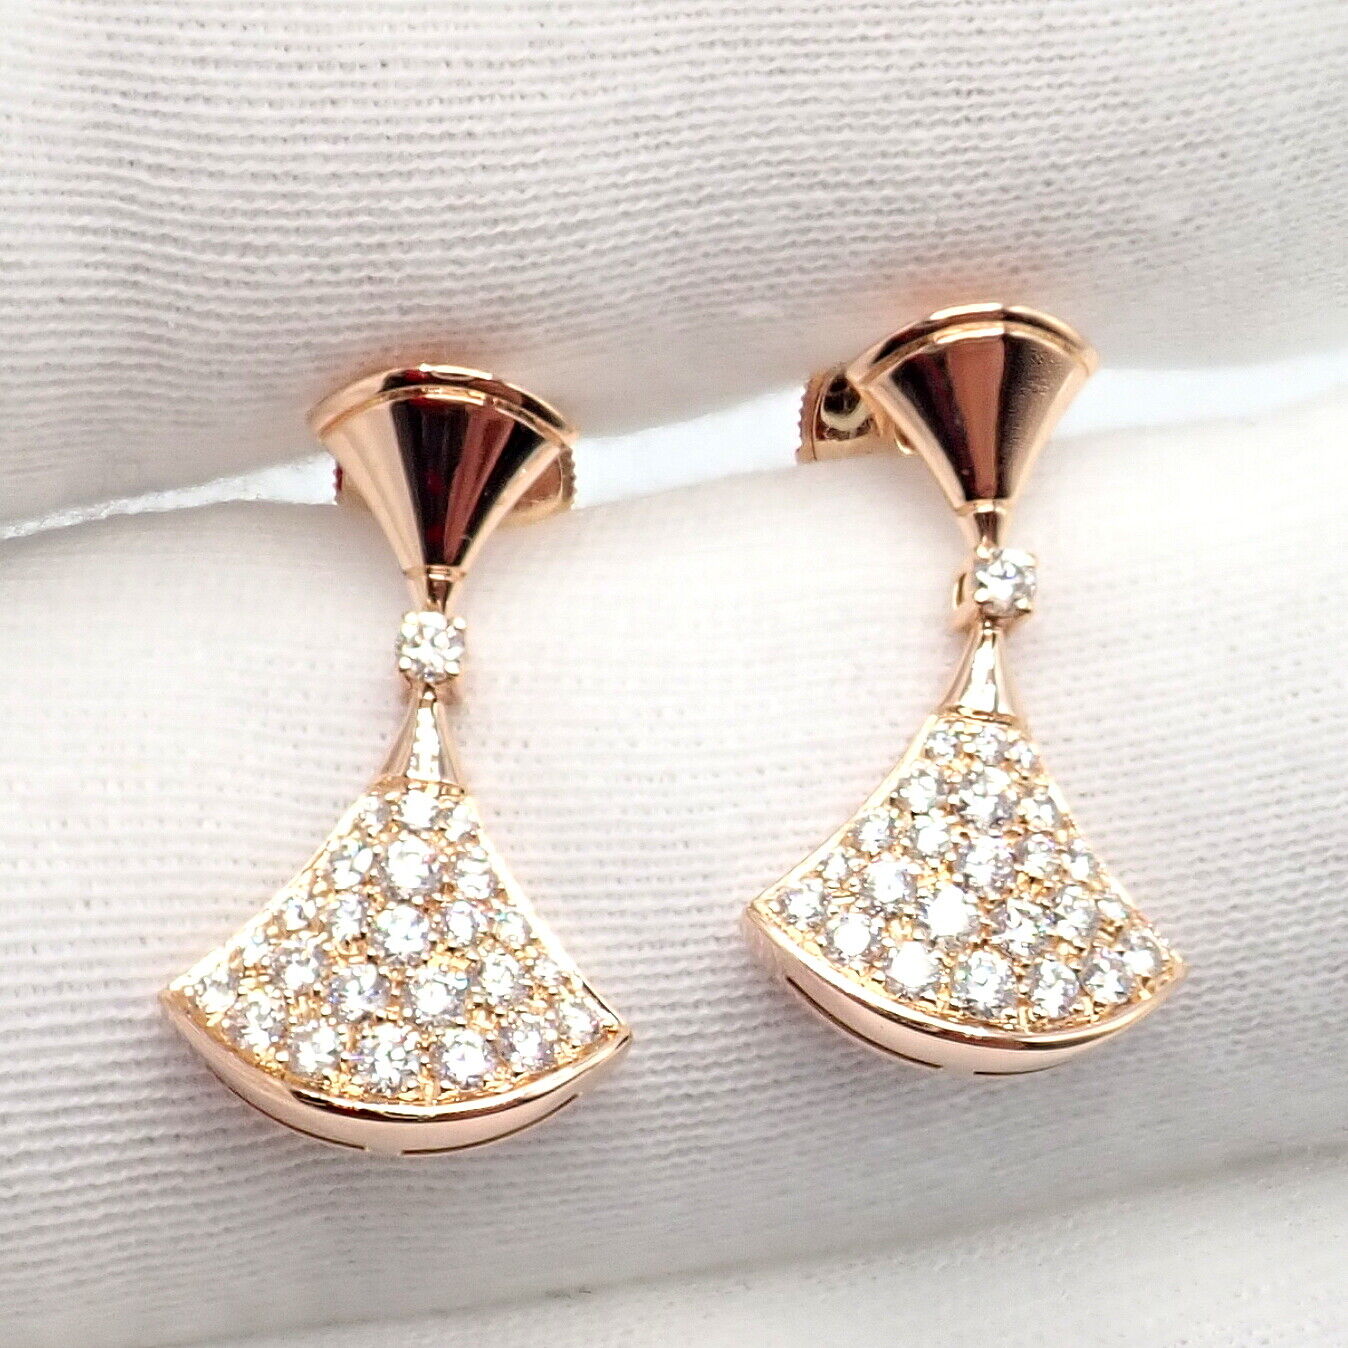 Bvlgari Jewelry & Watches:Fine Jewelry:Earrings Authentic! Bulgari Bvlgari 18k Rose Gold Diamond Diva Dream Earrings